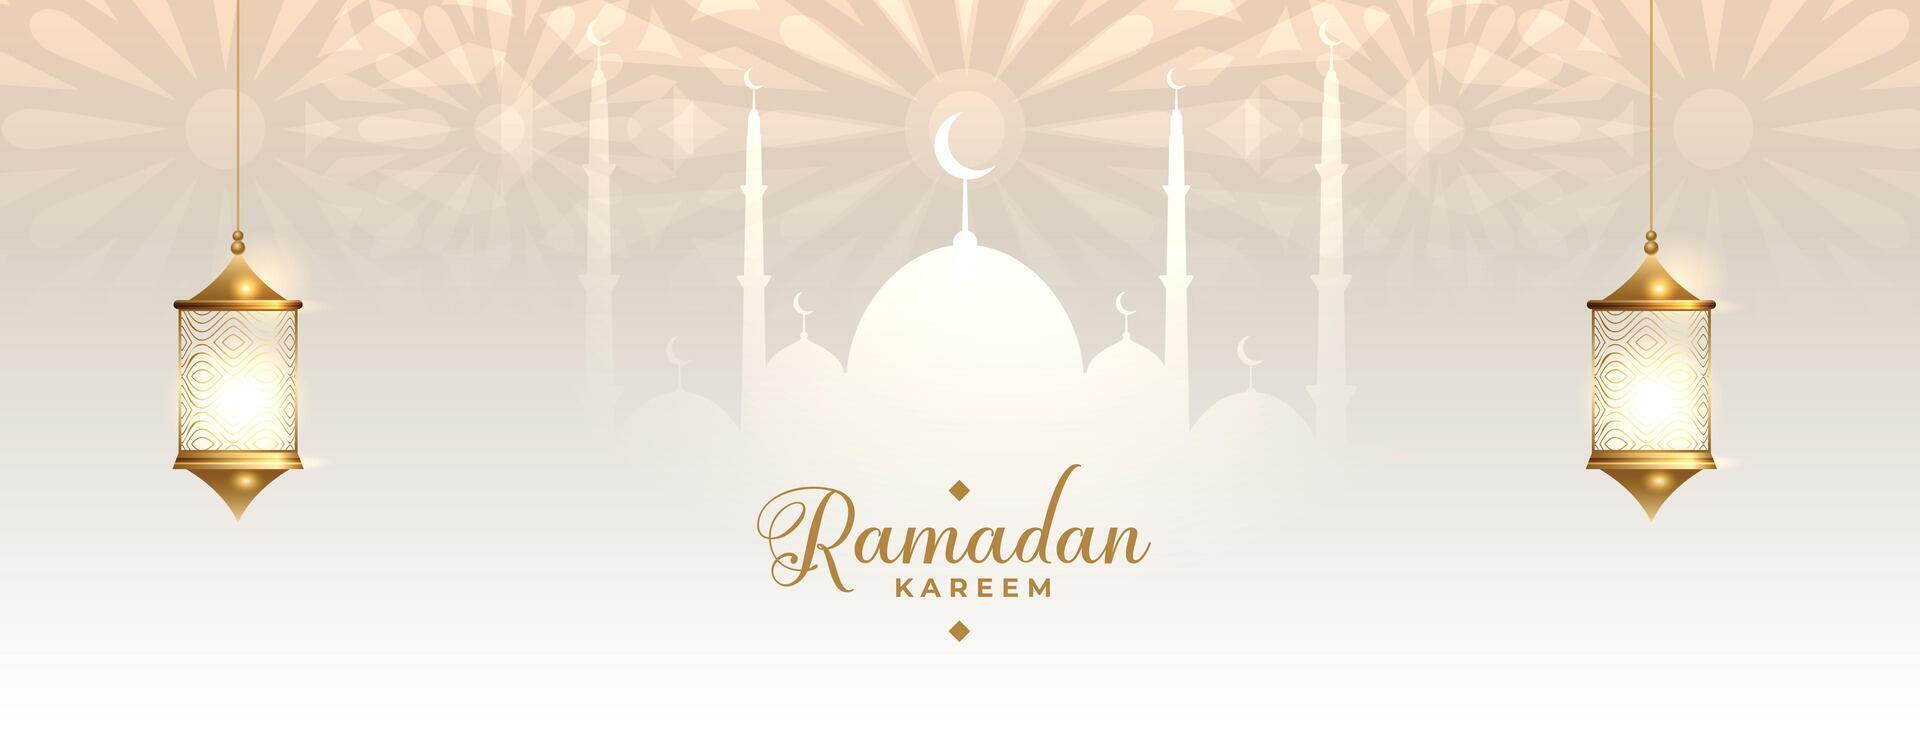 Ramadan kareem traditionnel islamique bannière conception vecteur